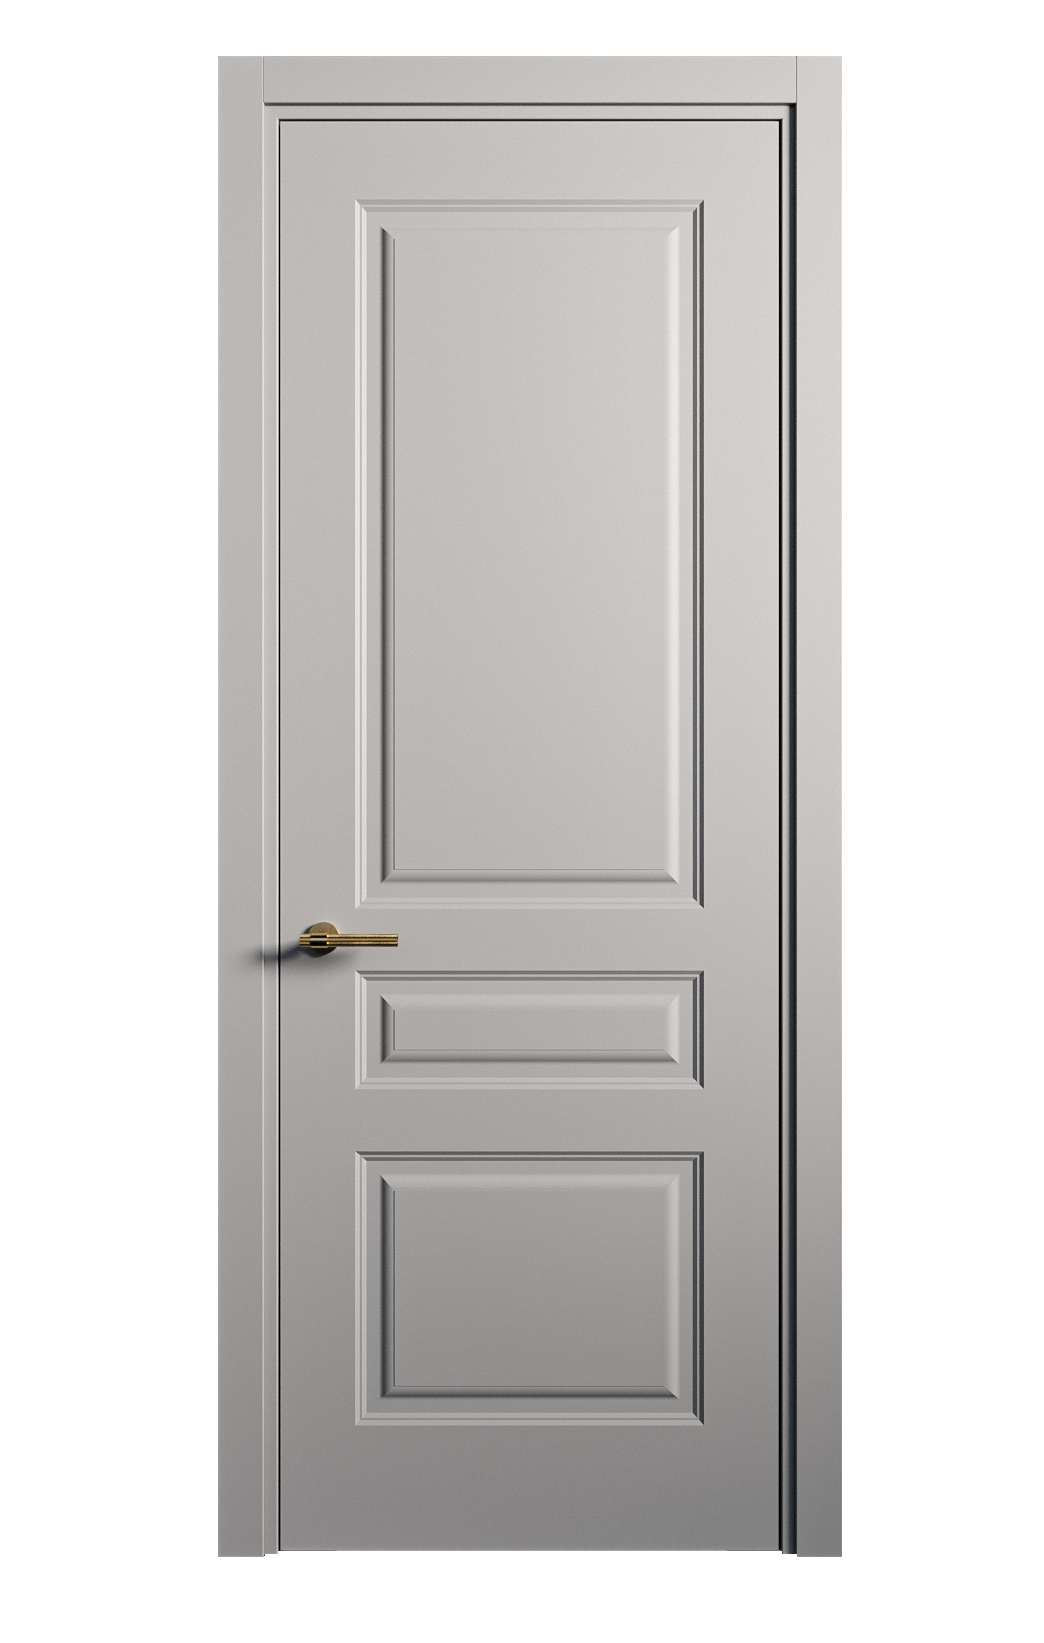 Межкомнатная дверь Вита-2 глухая эмаль ral 7040 26346